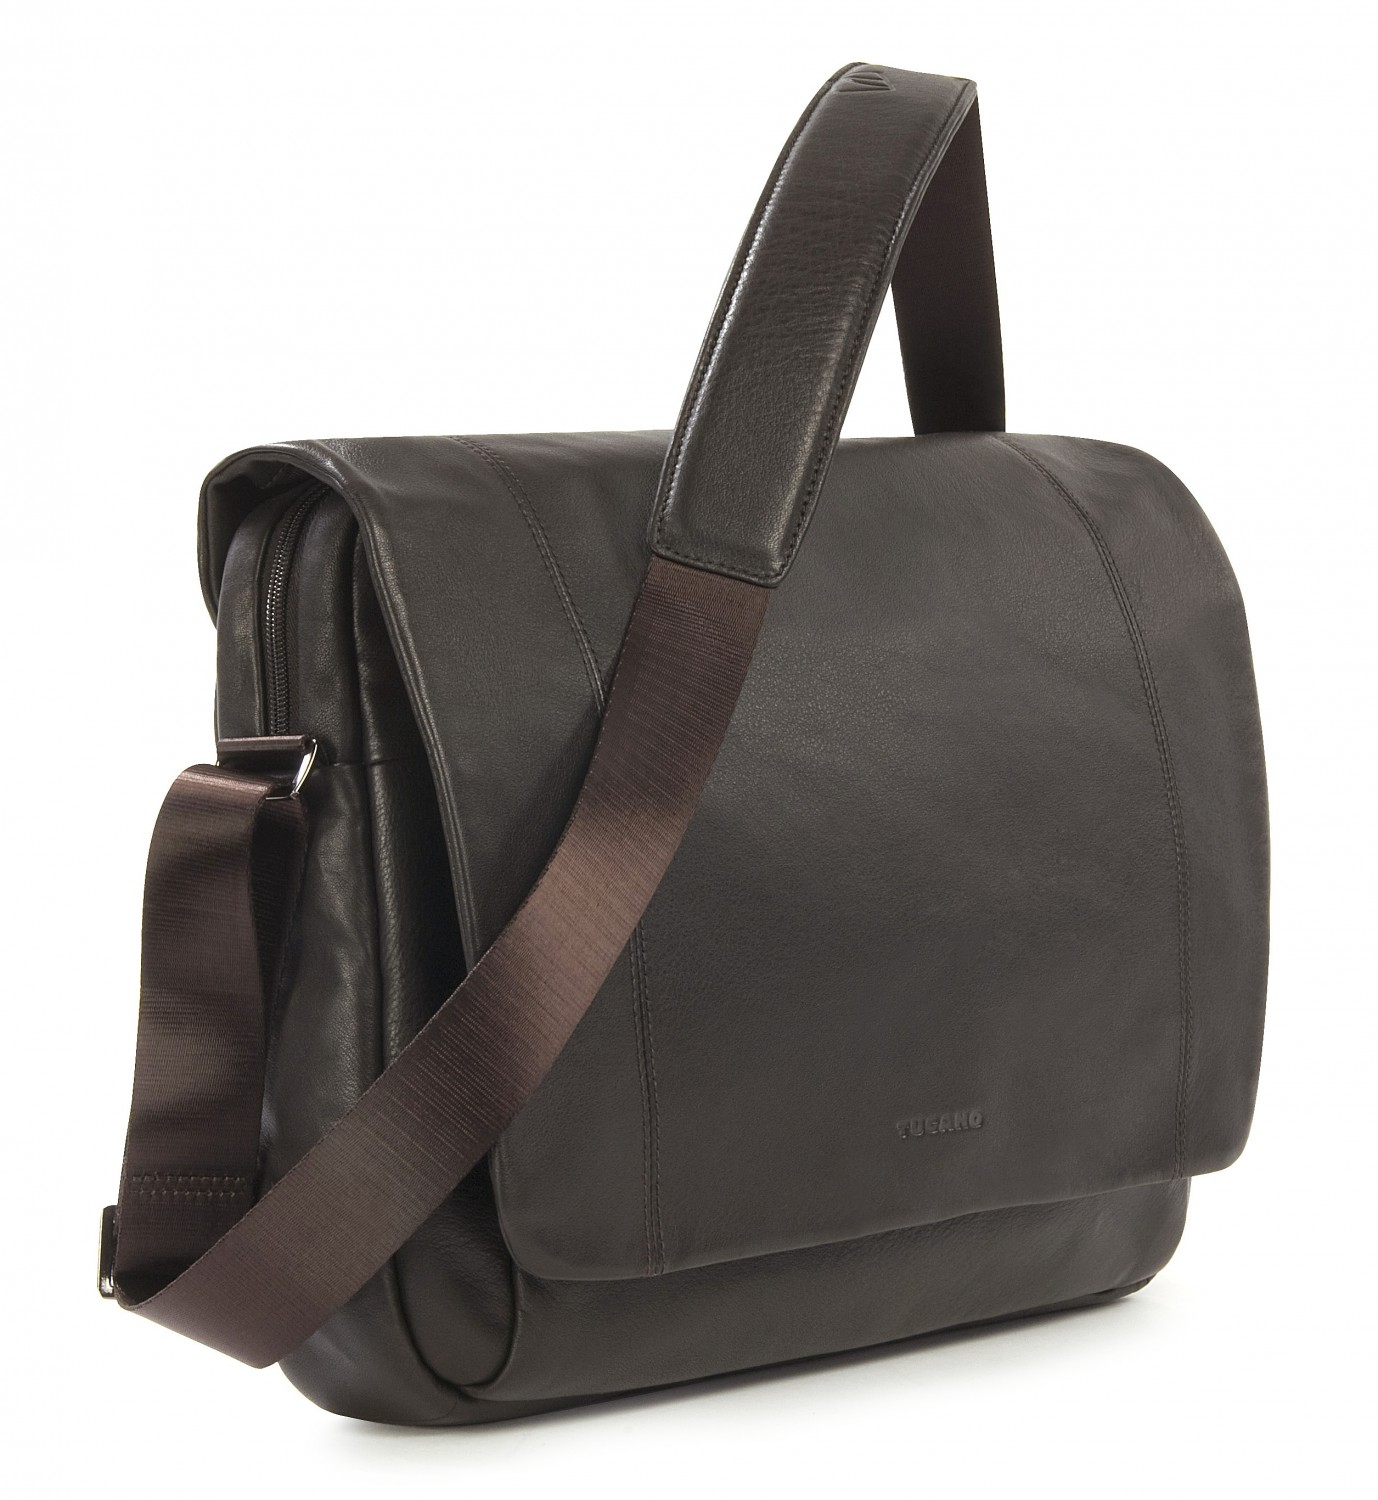 TUCANO One Premium Leder, für Umhängetasche Tasche Dunkelbraun Notebook Universal